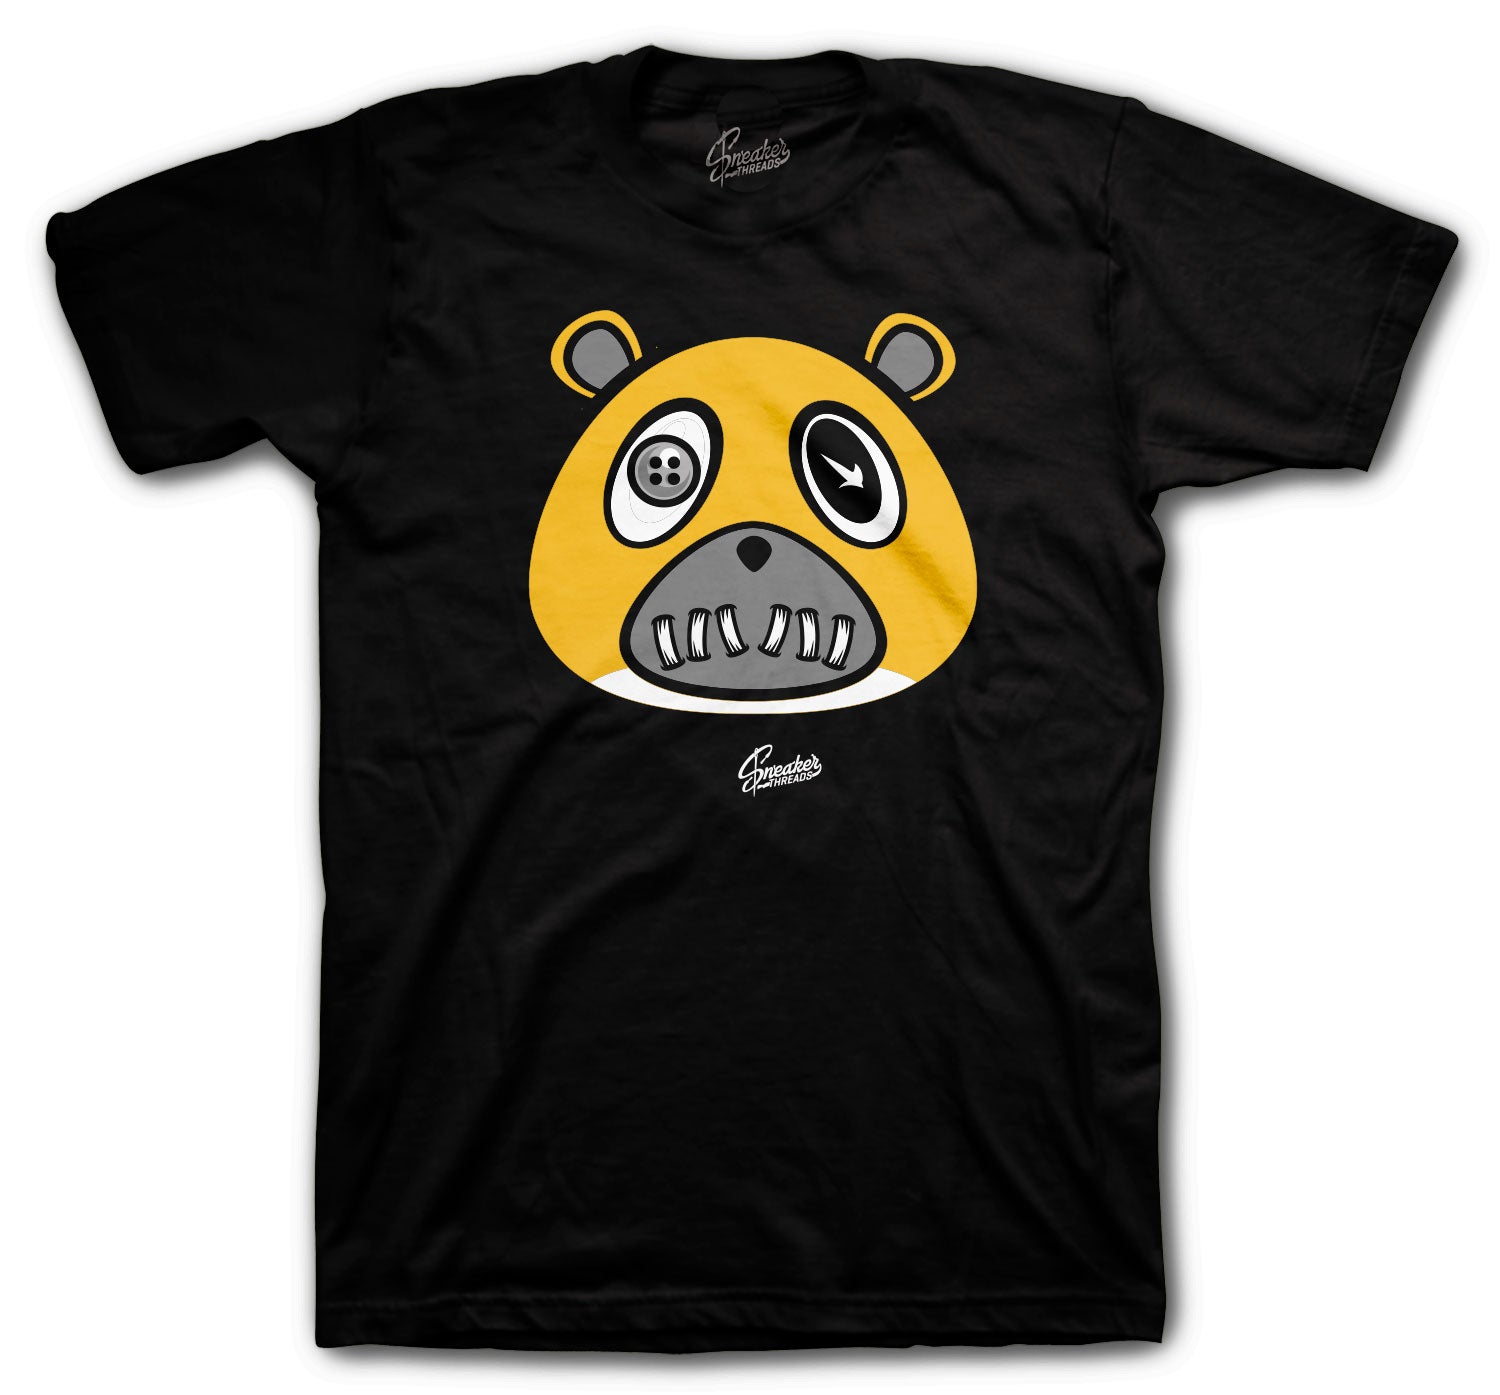 Dunk Hi Varsity Maize Shirt - ST Bear - Black